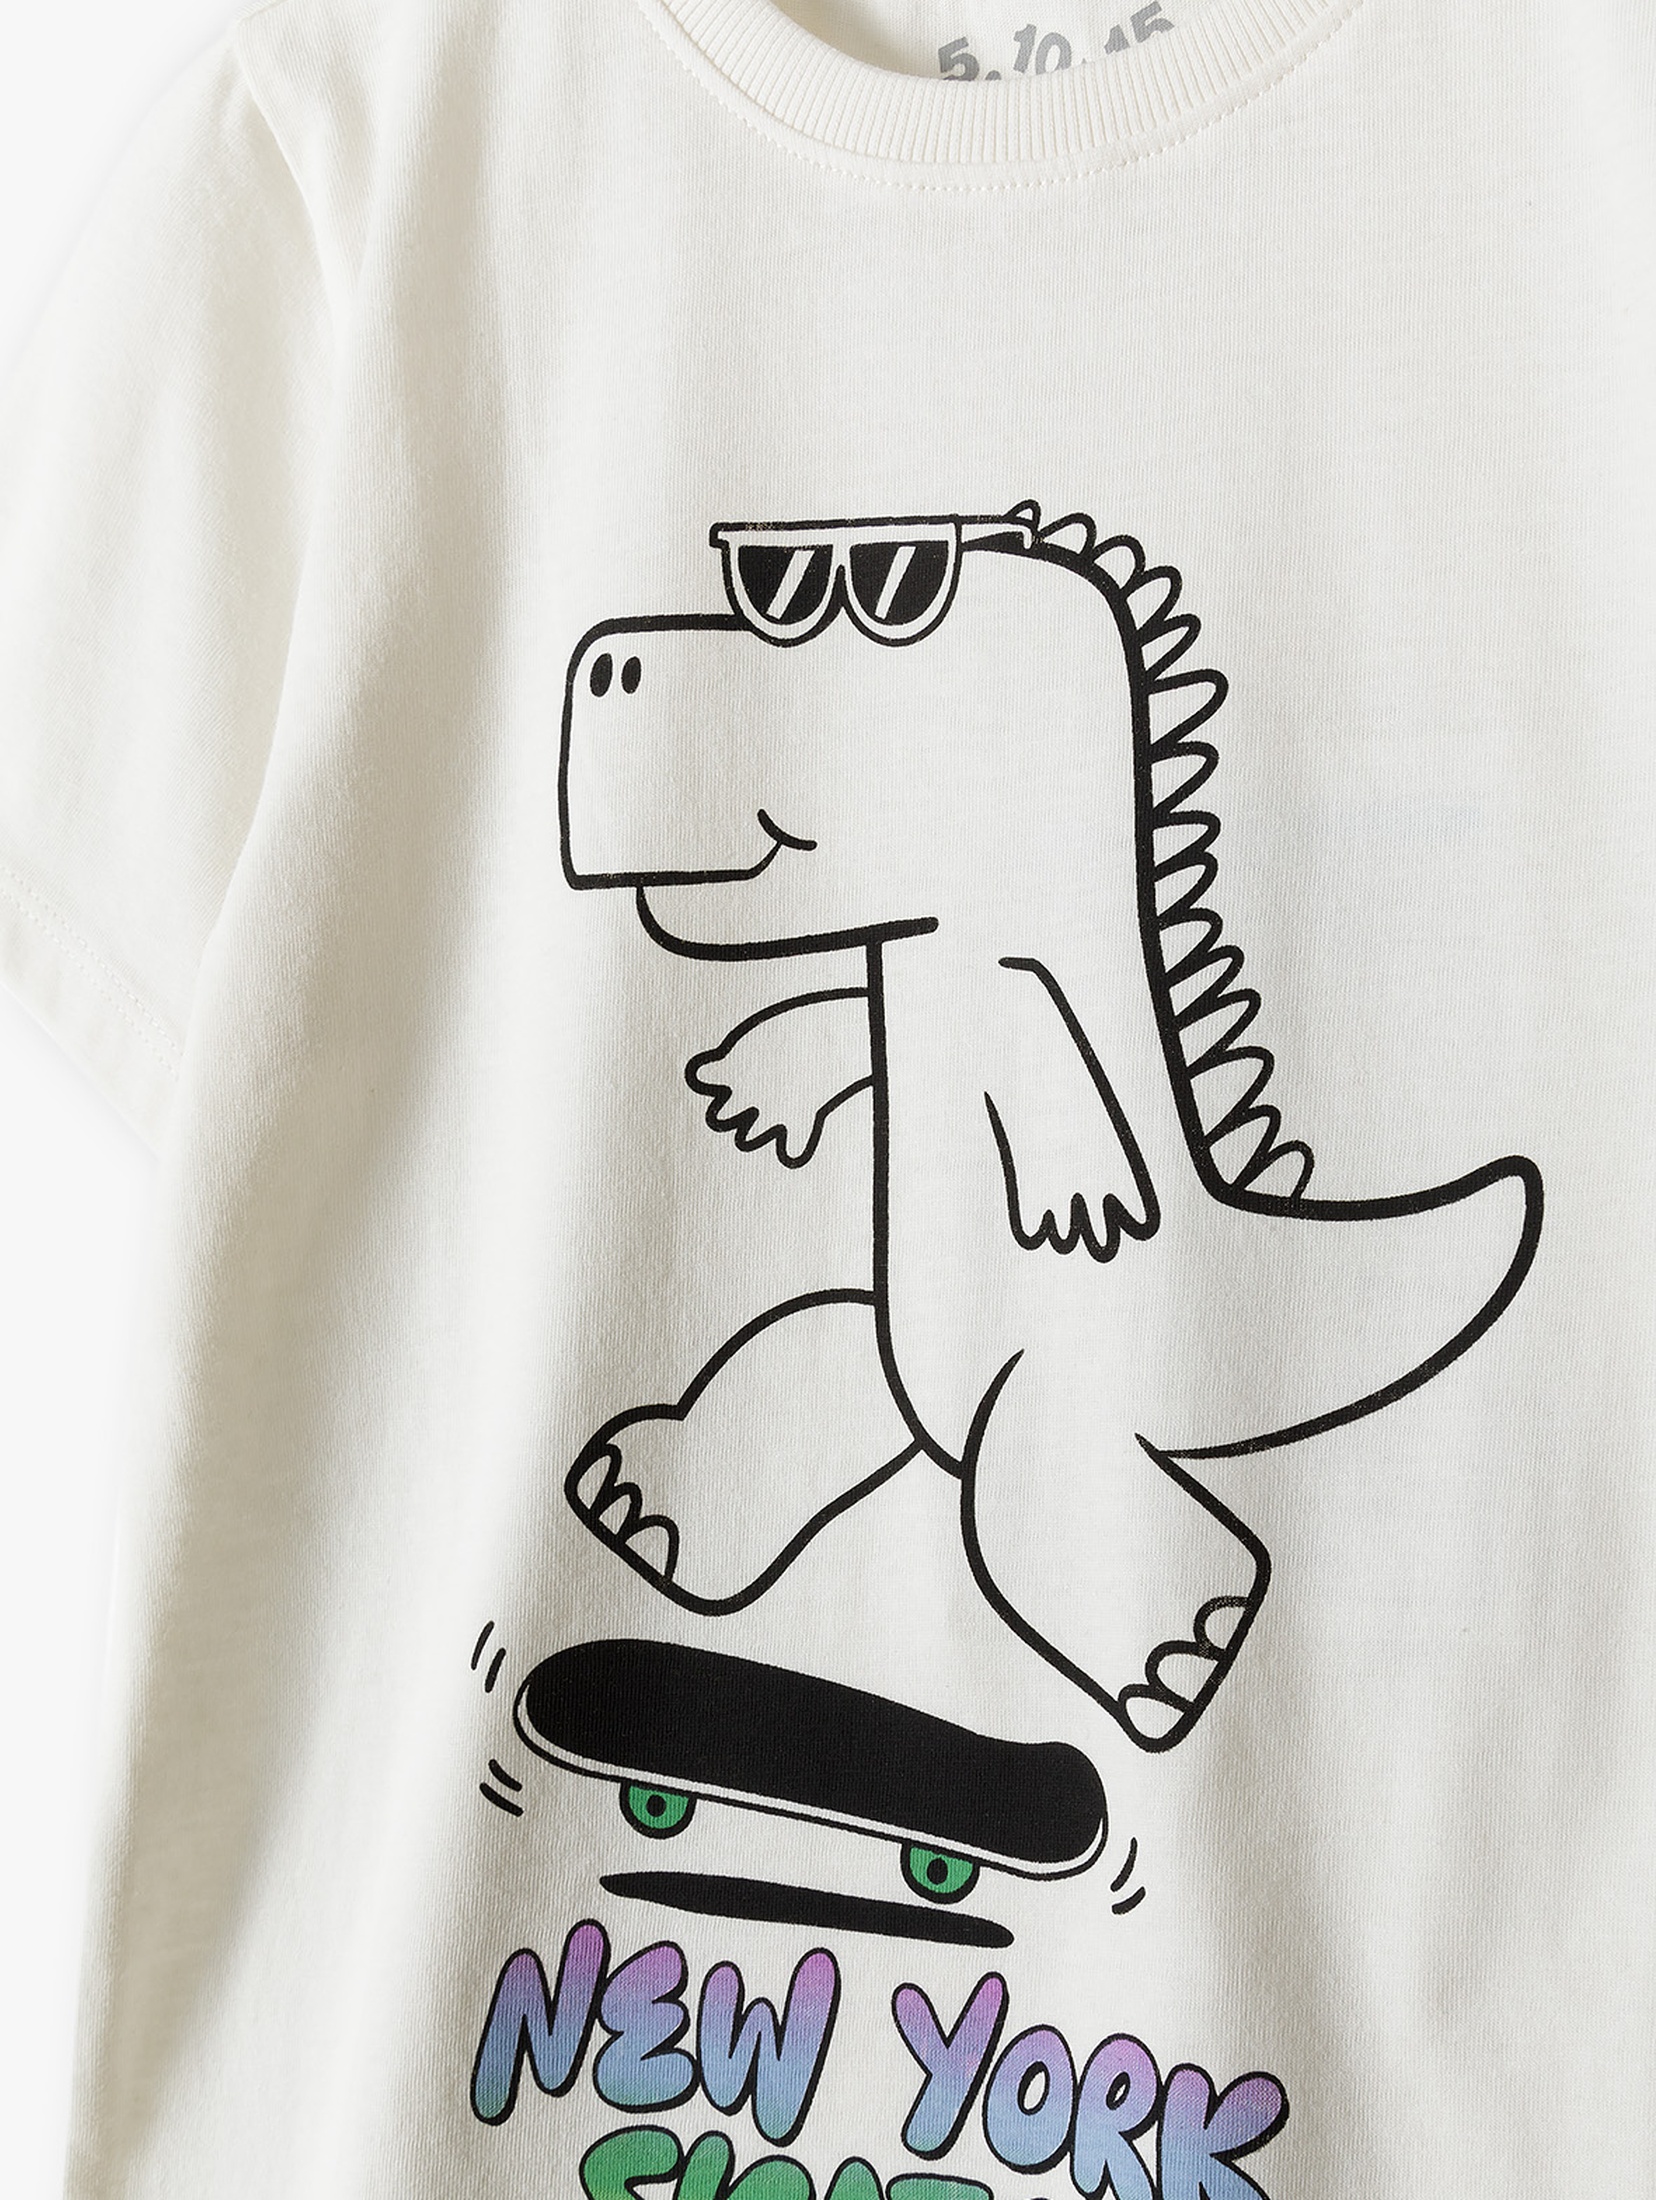 T-shirt z dinozaurem - New York Skater - 5.10.15.